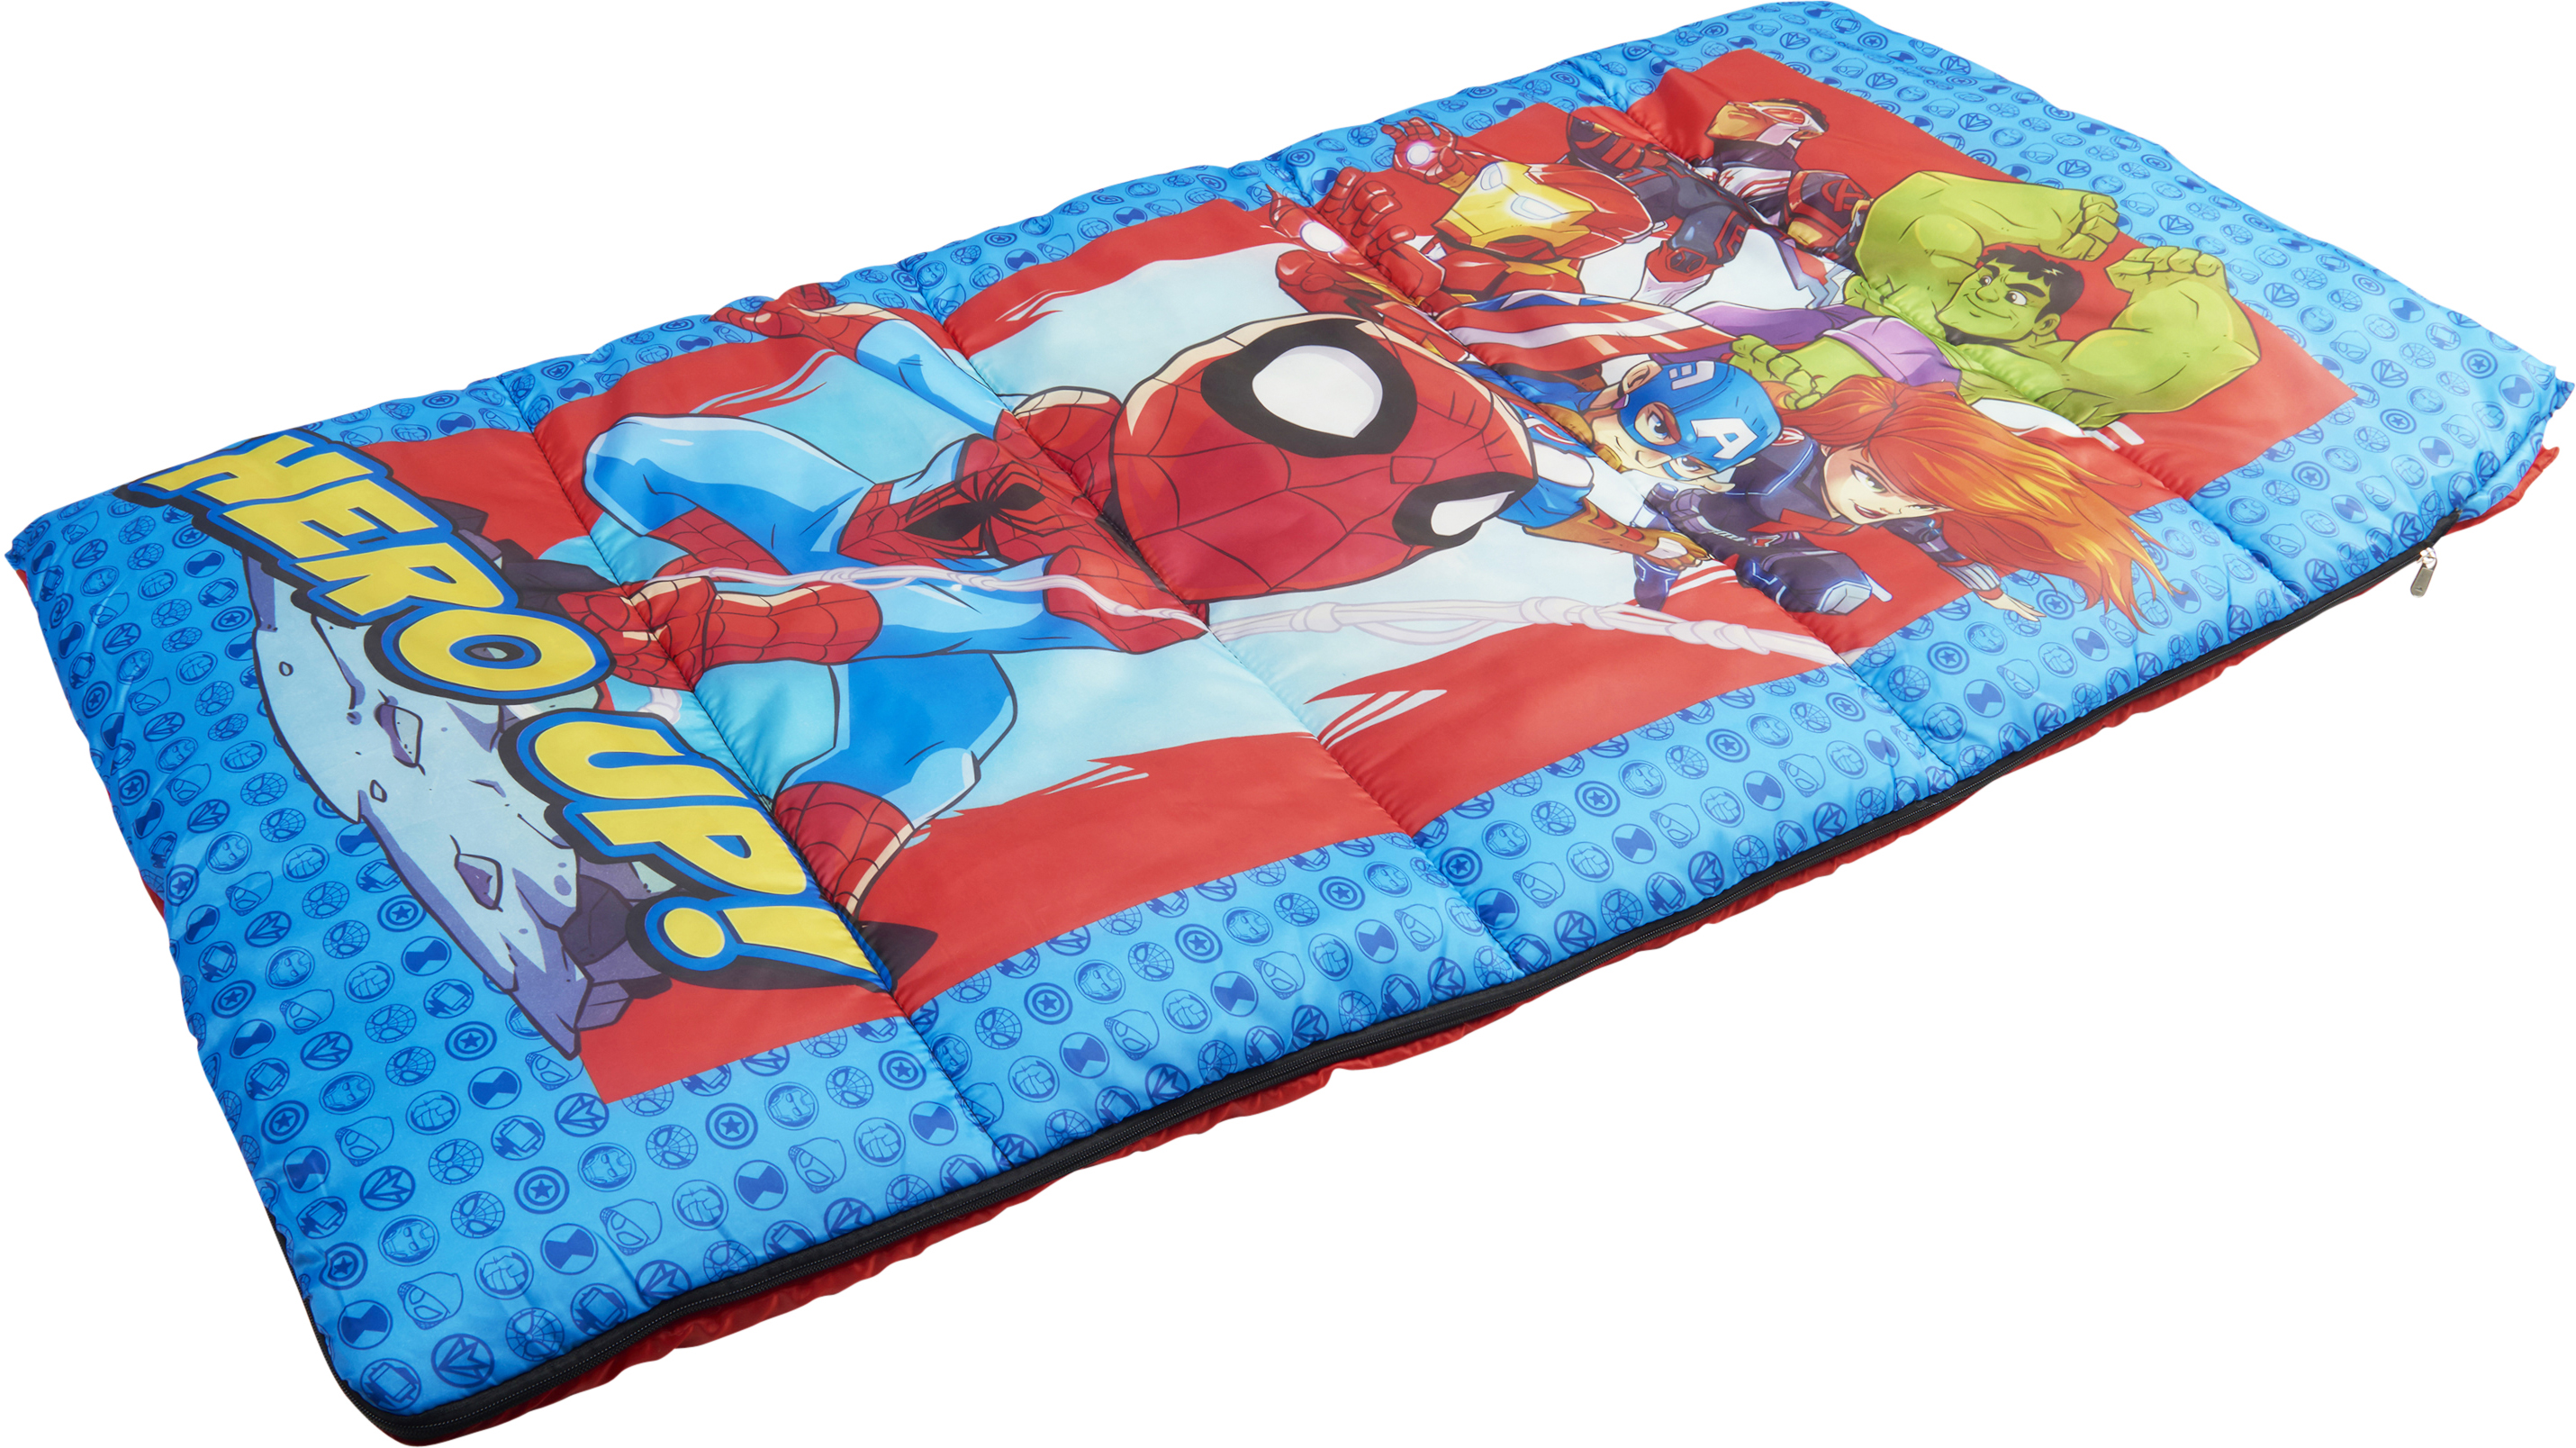 Marvels Super Hero Adventures Spiderman Sleeping Bag 